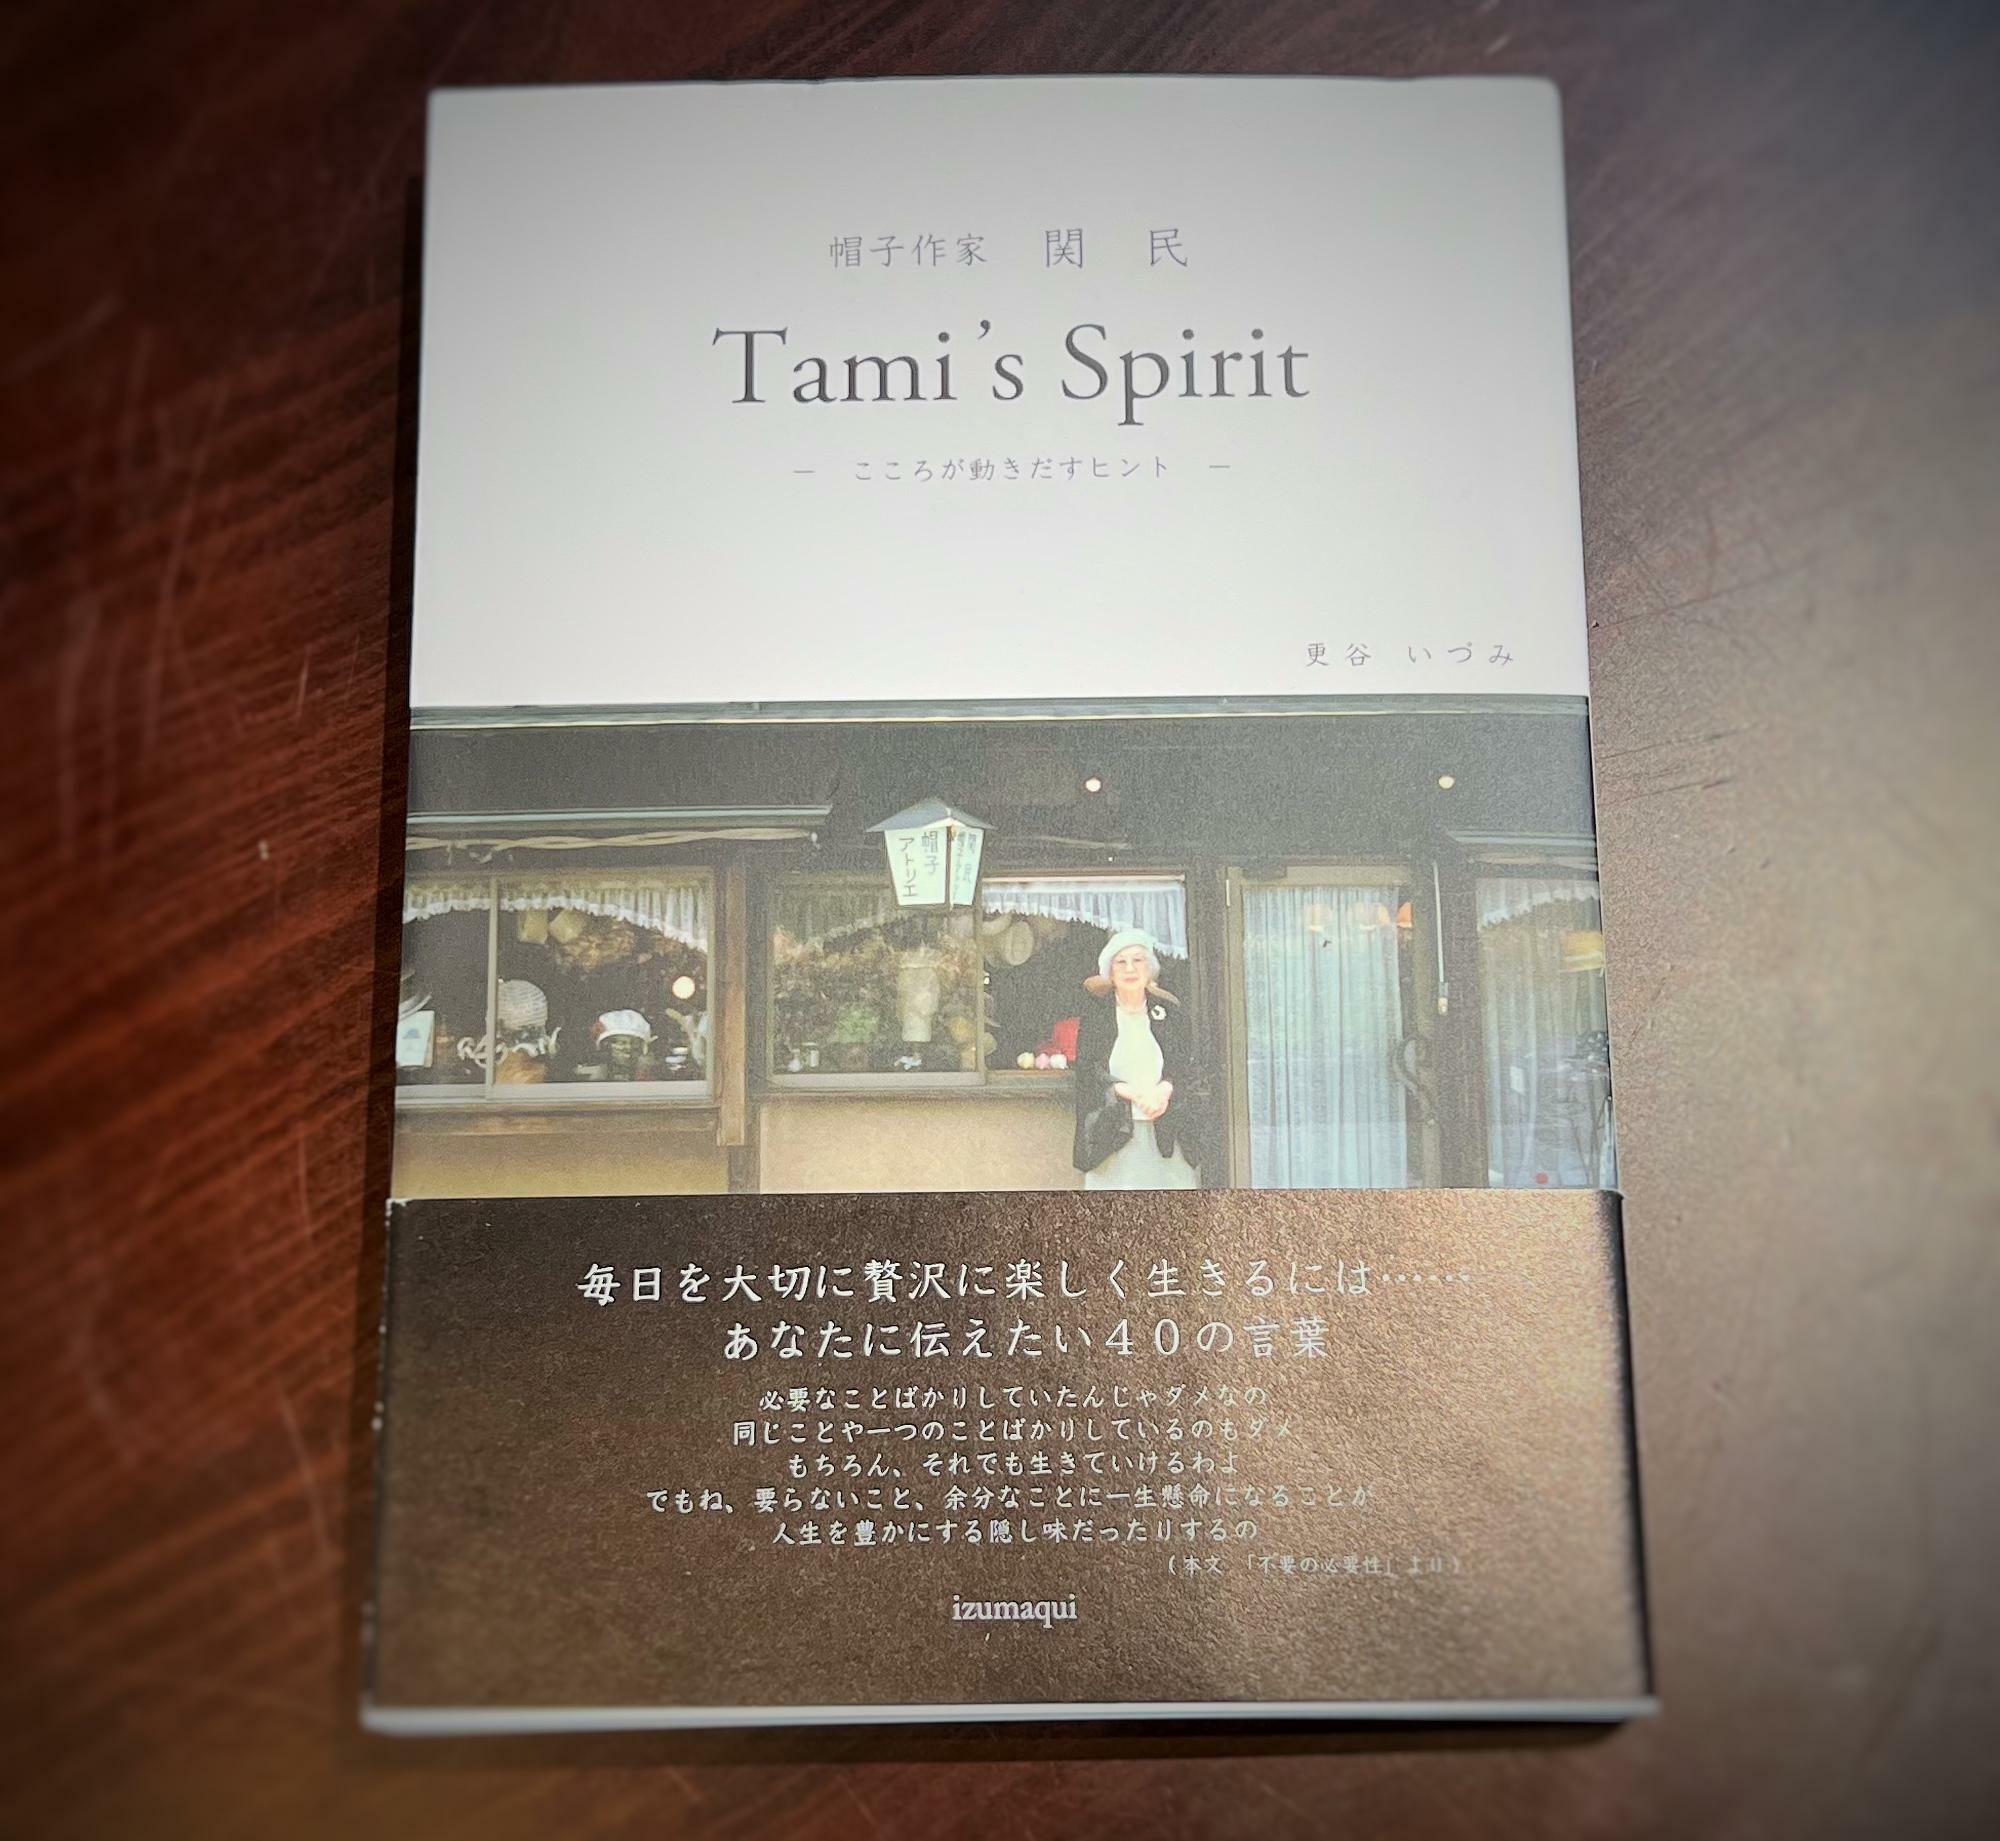 「帽子作家 関 民 Tami's Spirit -こころが動きだすヒントー」